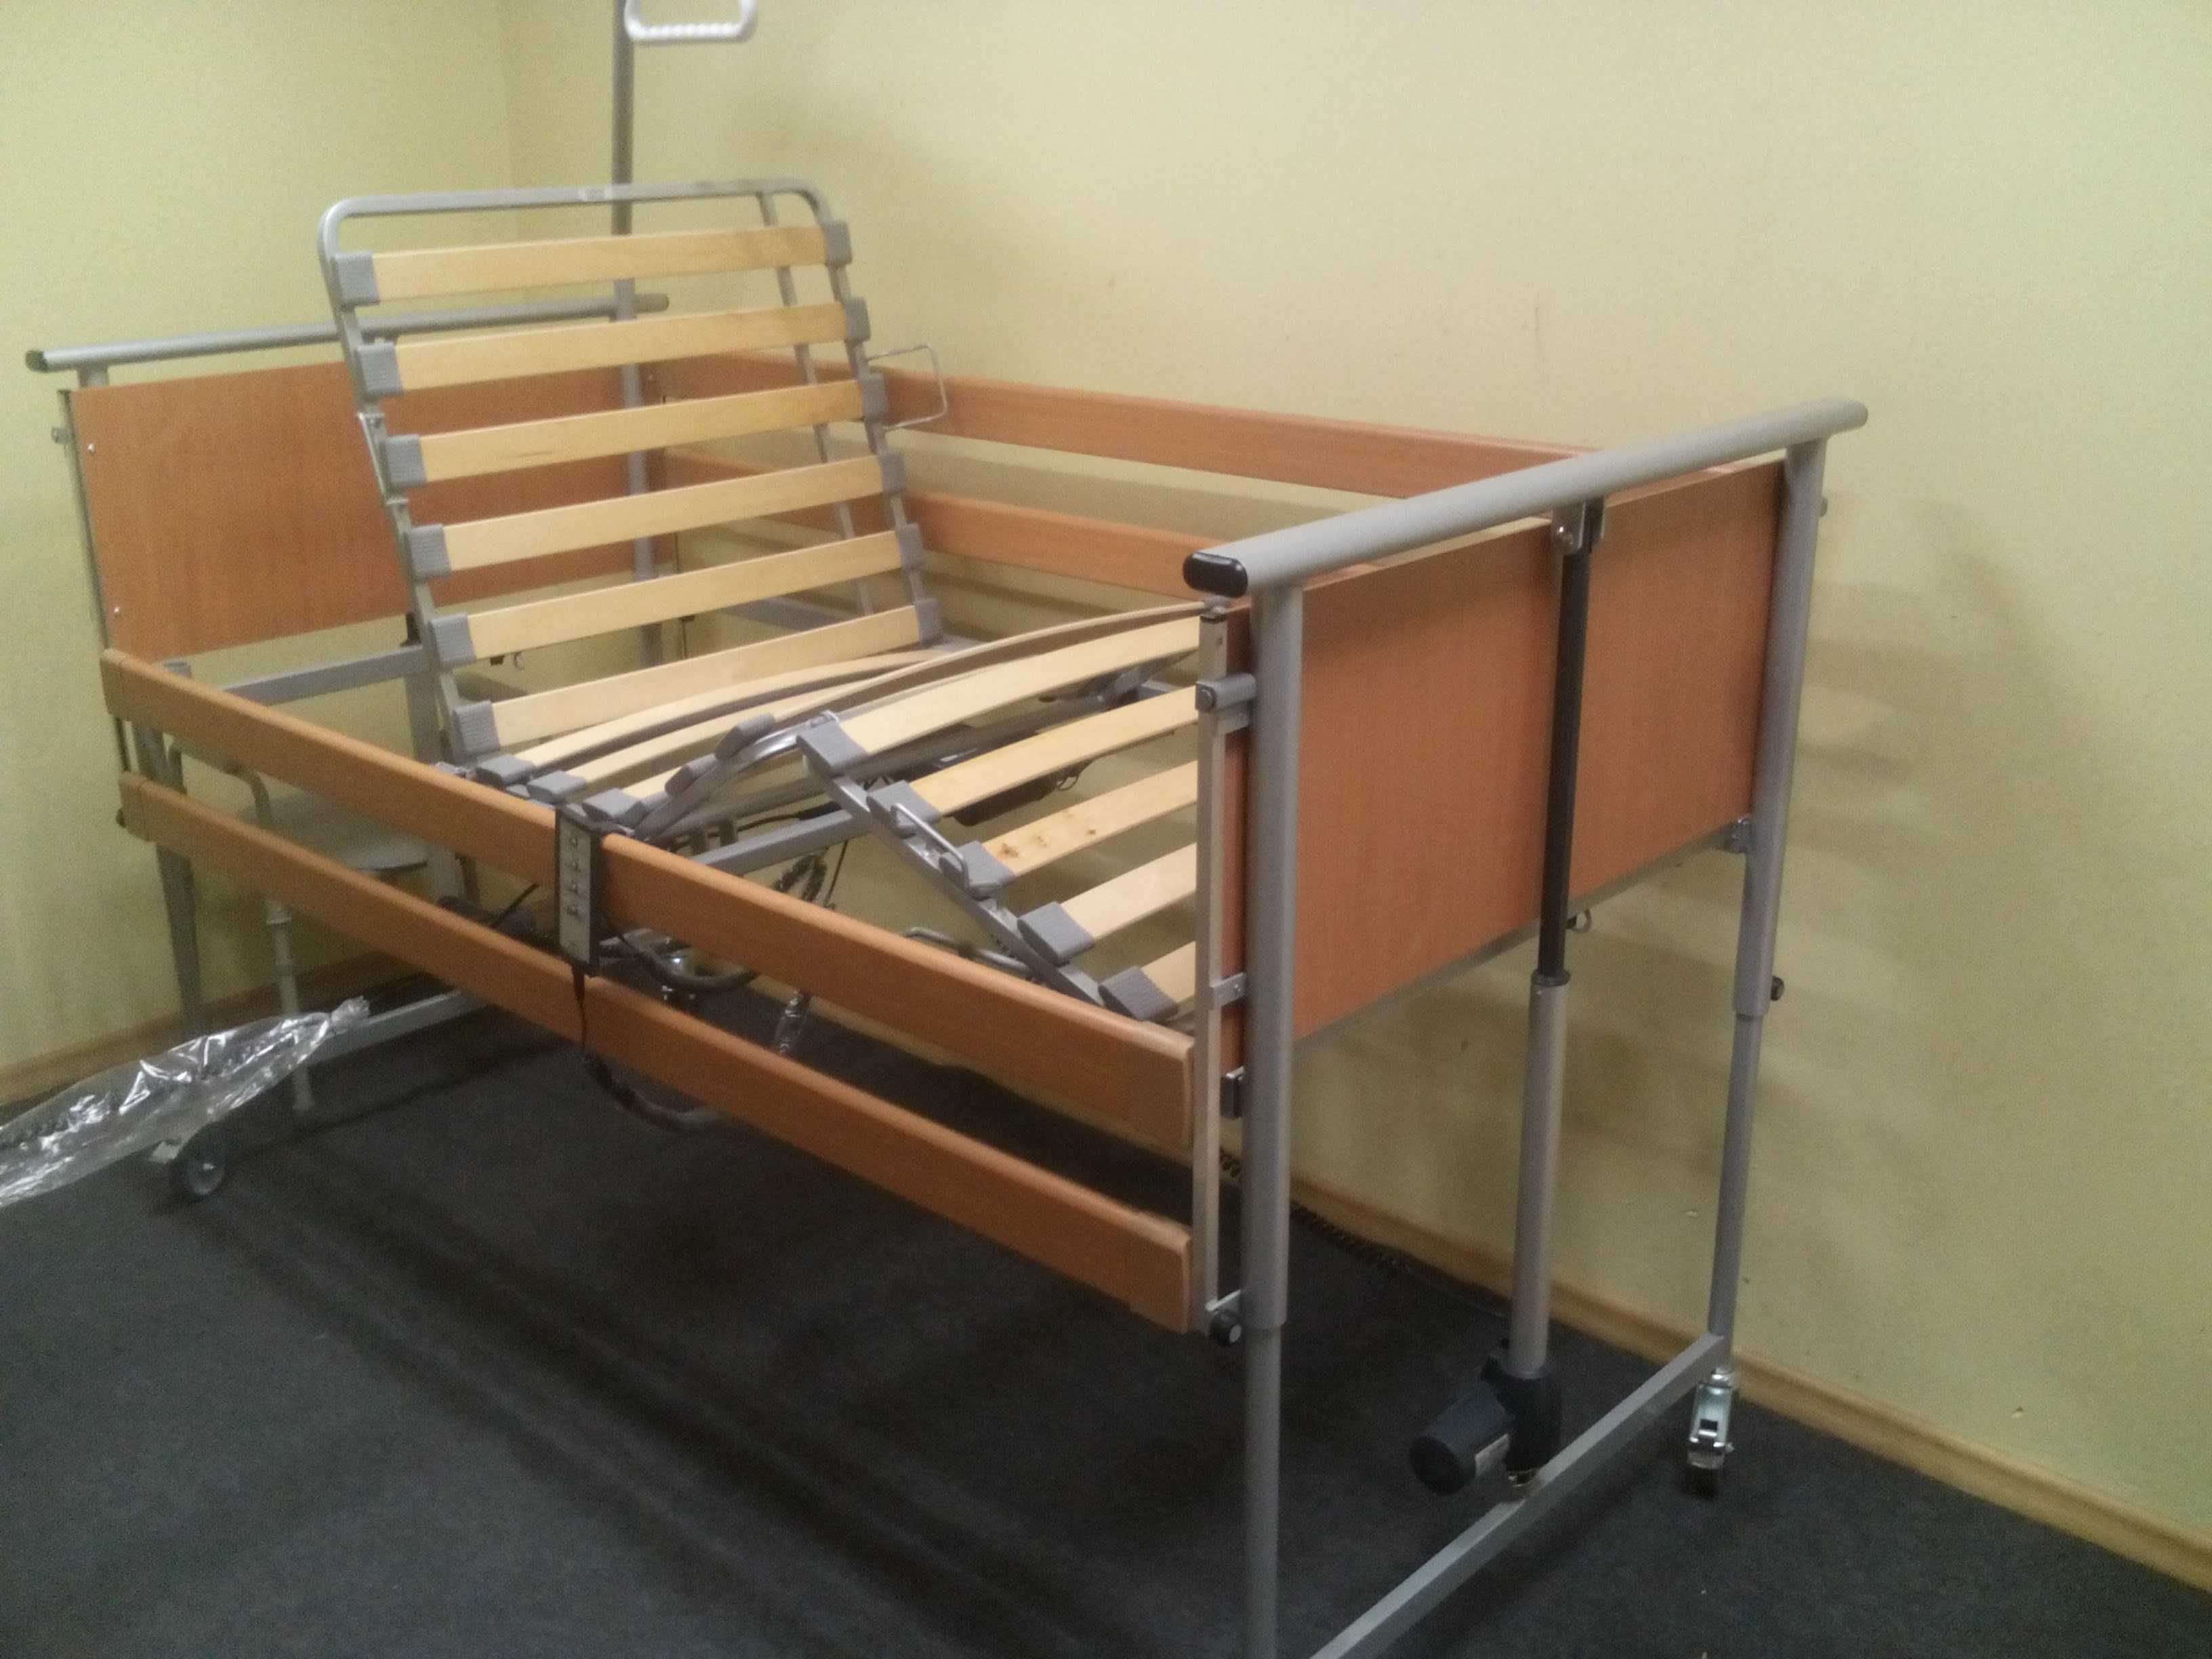 Łóżko rehabilitacyjne Elbur PB 325 dla pacjenta, dostawa oraz montaż!